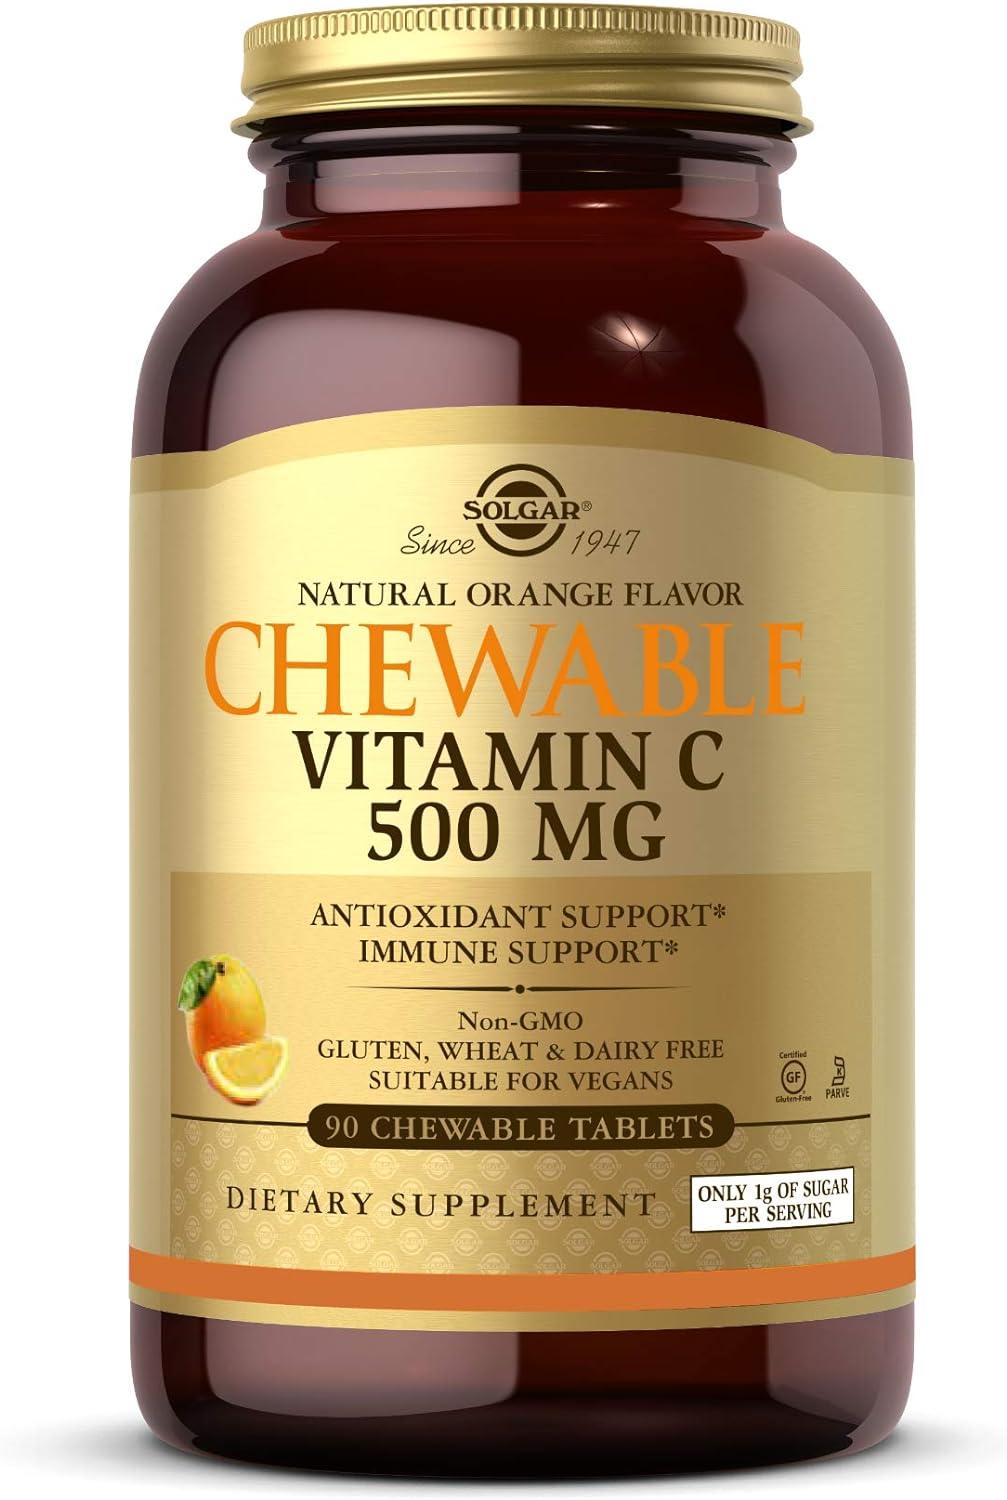 SOLGAR - Solgar Vitamin C 500Mg. Chewable Orange Flavor 90 Tabletas Masticables - The Red Vitamin MX - Suplementos Alimenticios - Mexico